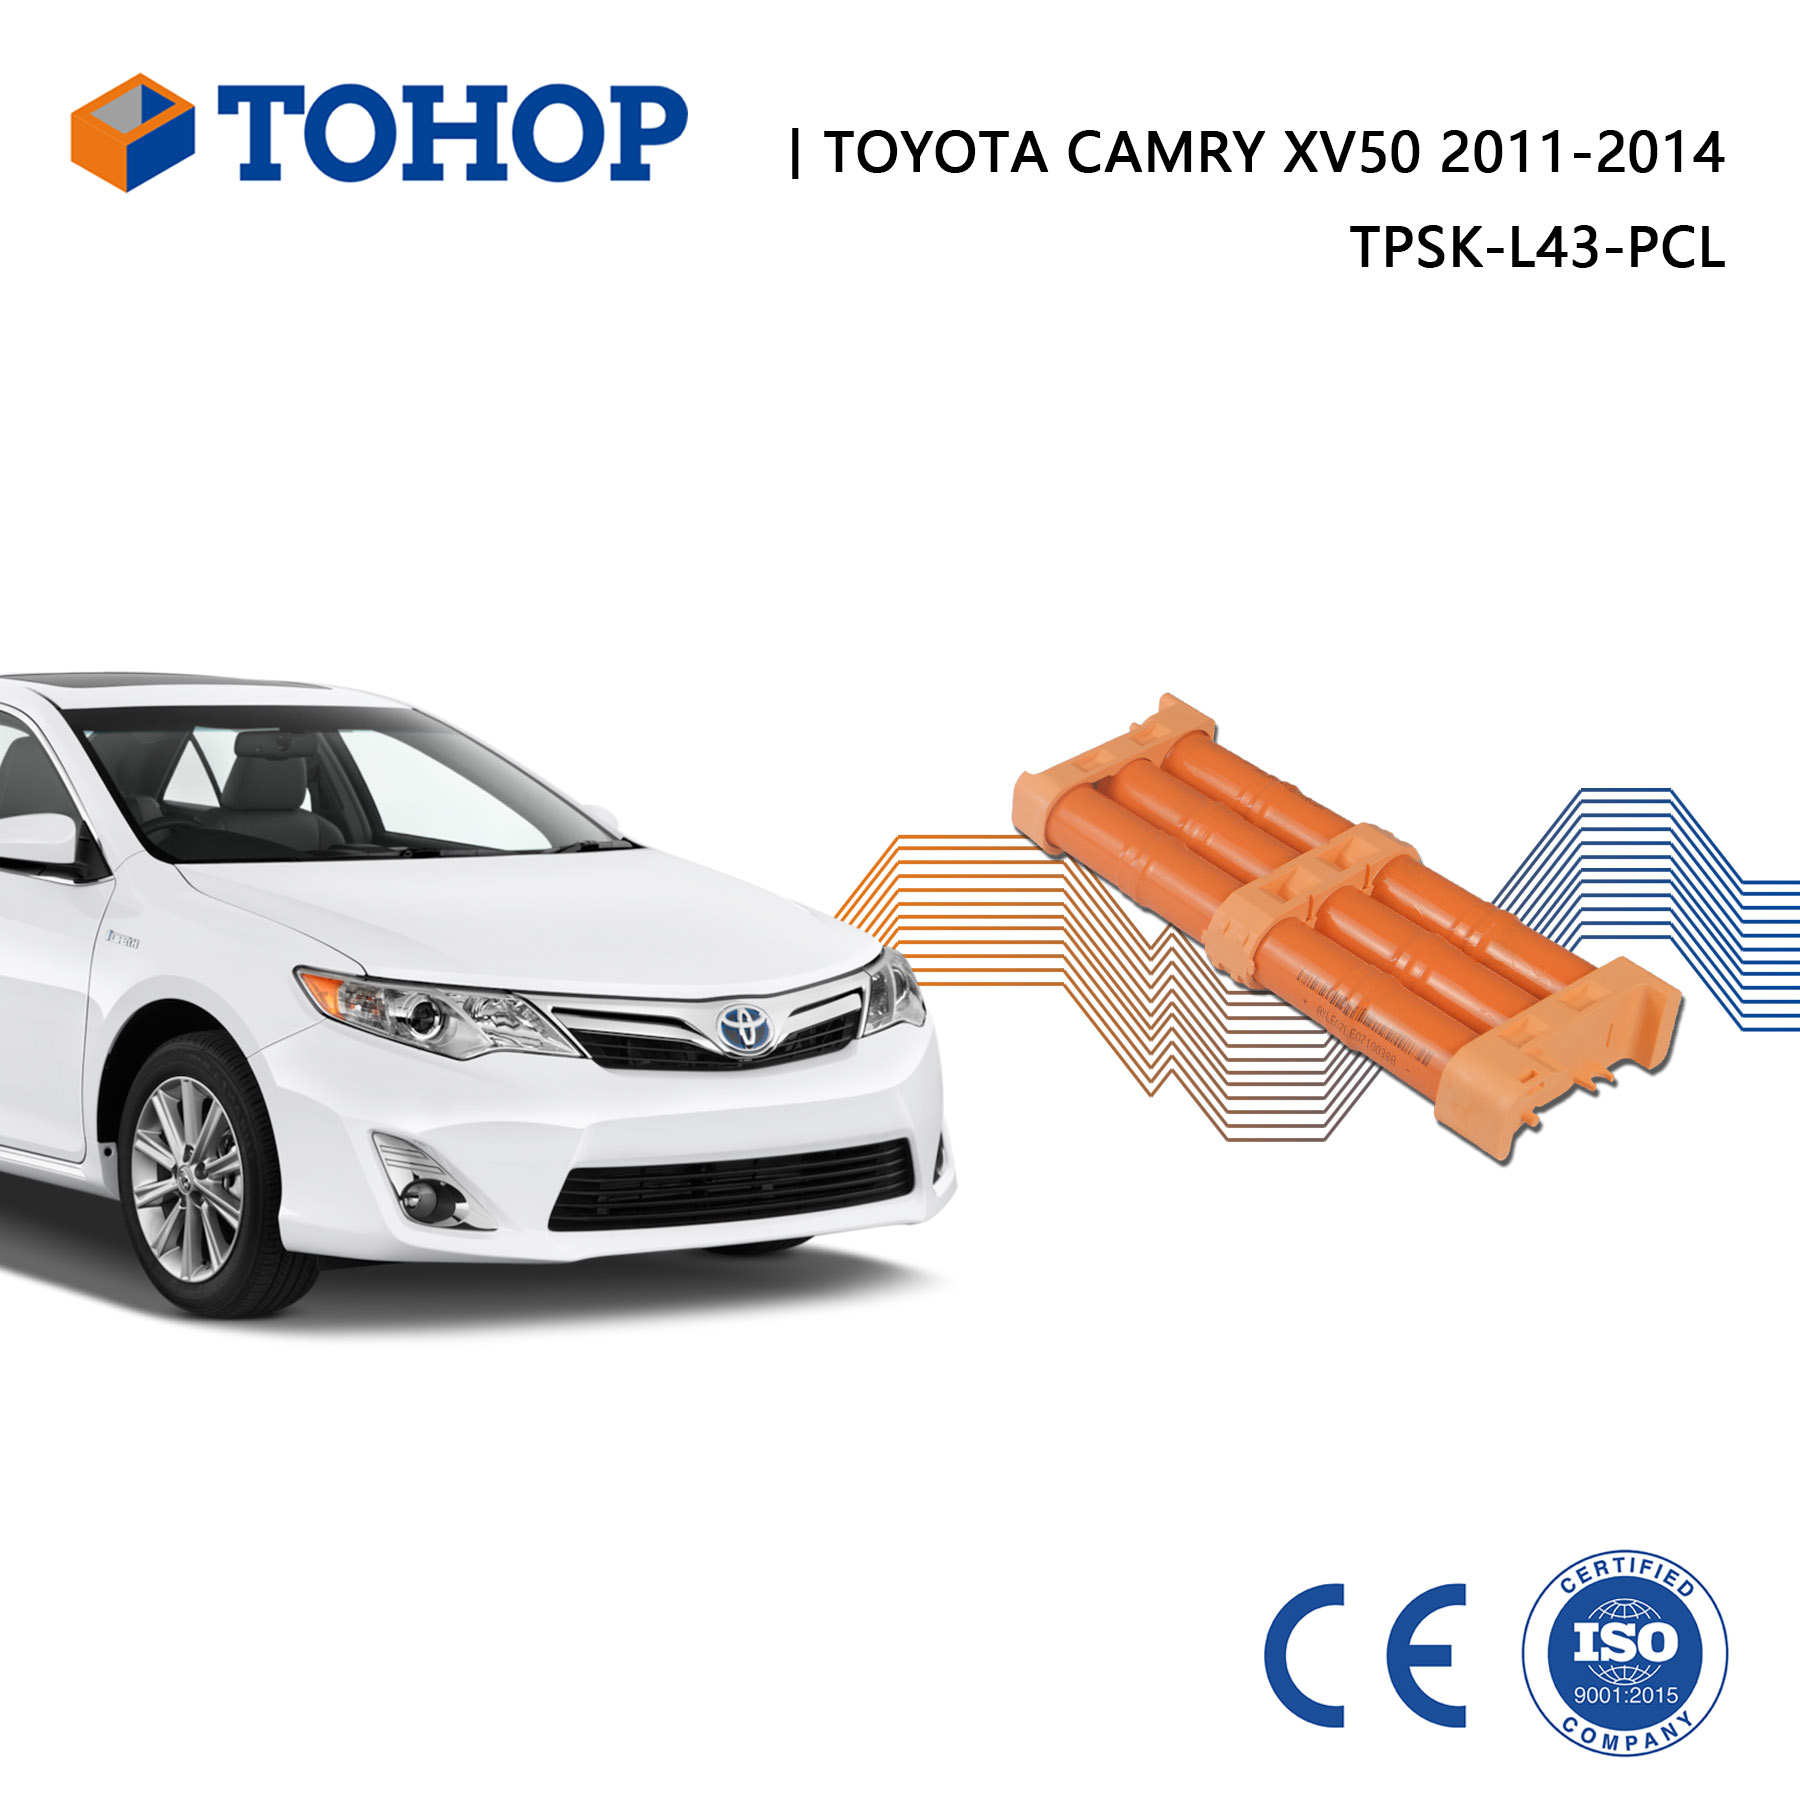 Batterie hybride neuve 14,4 V pour Toyota Camry XV50 2016